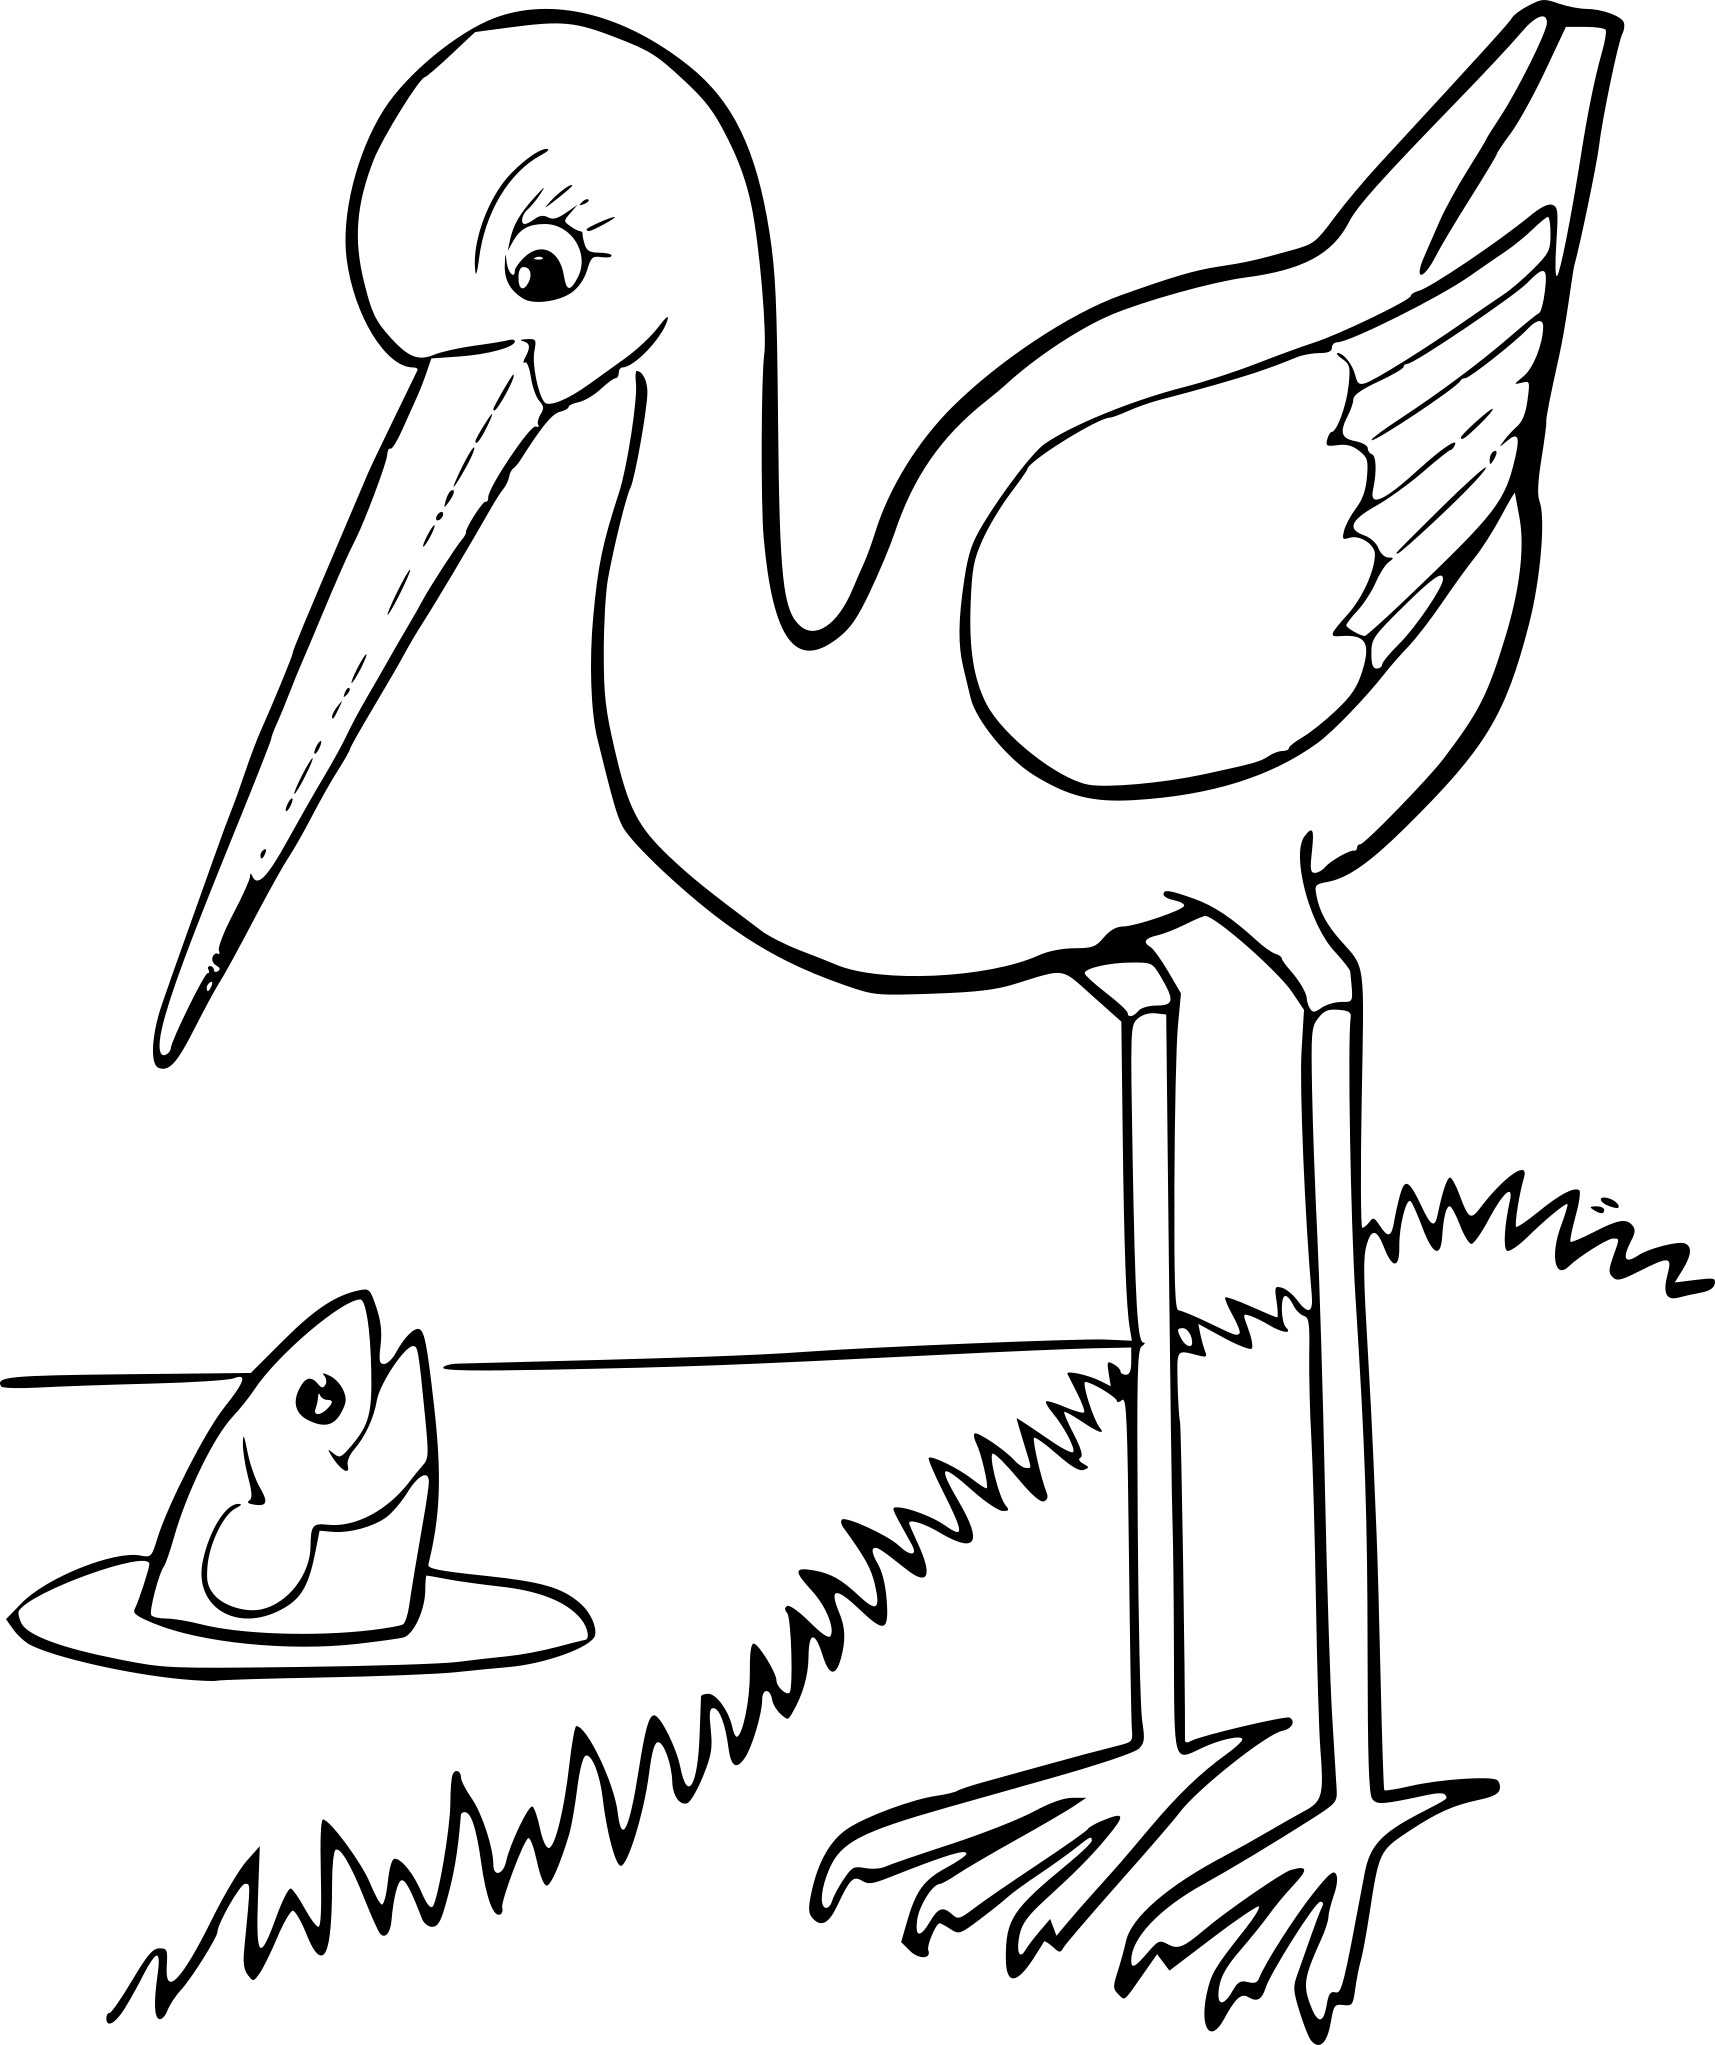 Crane Bird coloring page